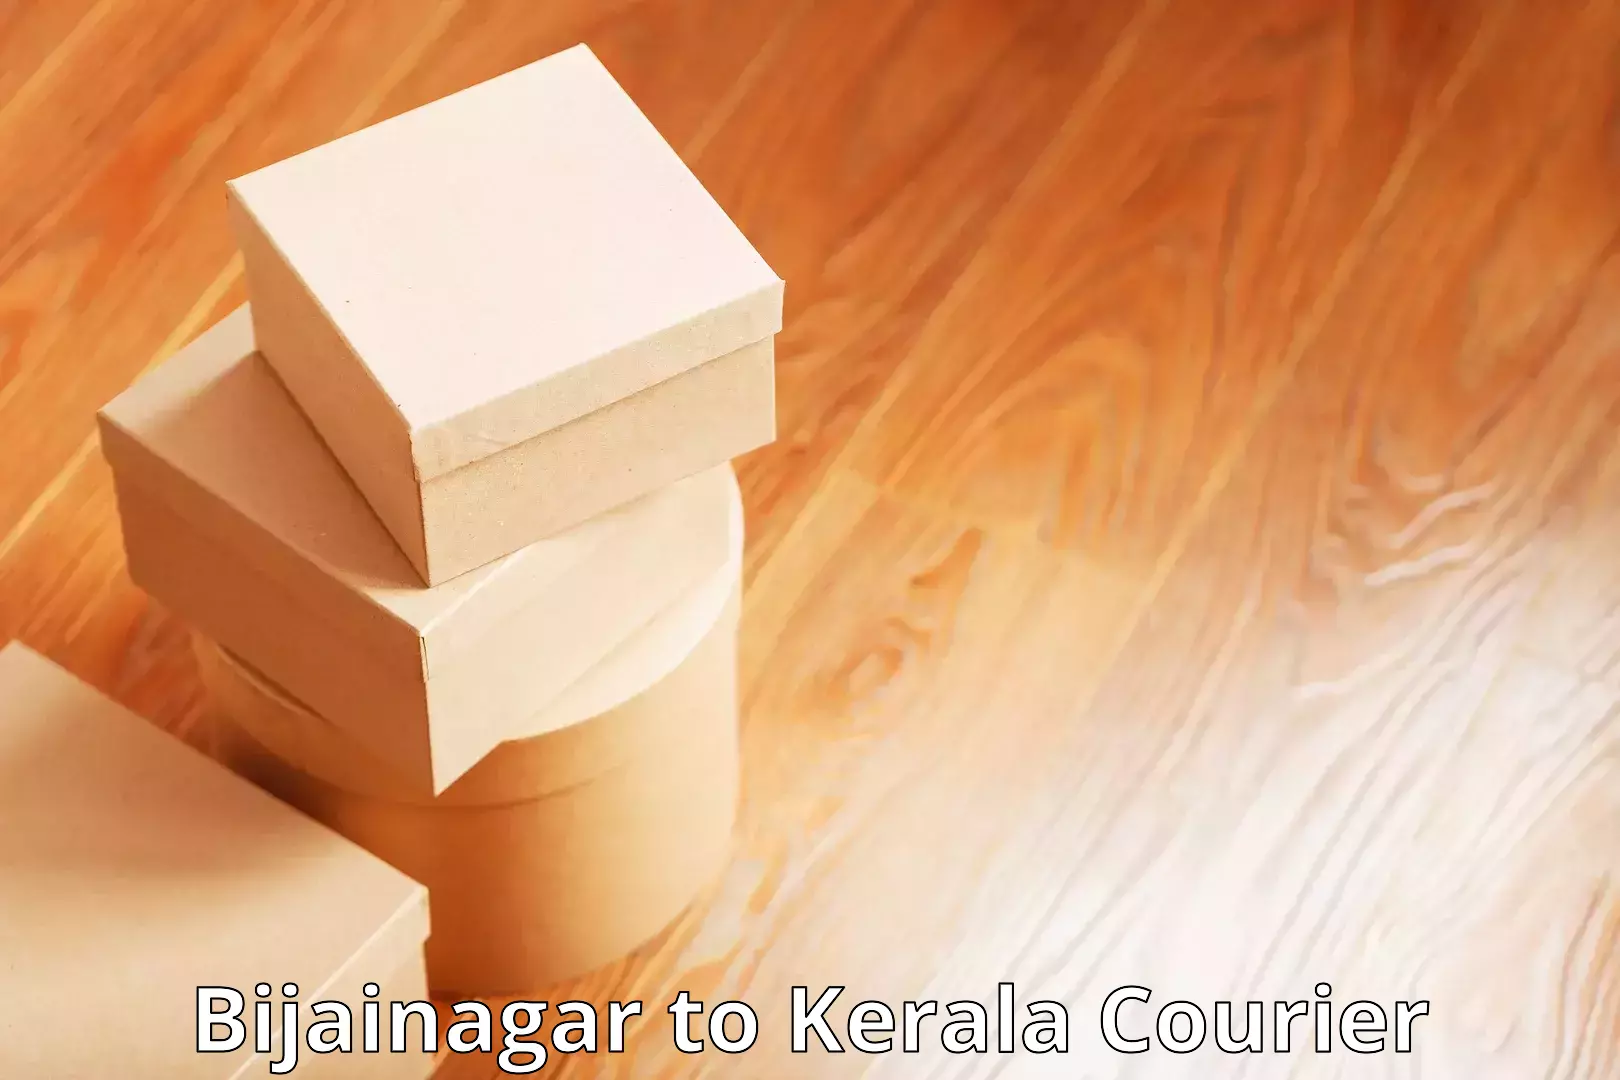 Comprehensive parcel tracking Bijainagar to Kerala